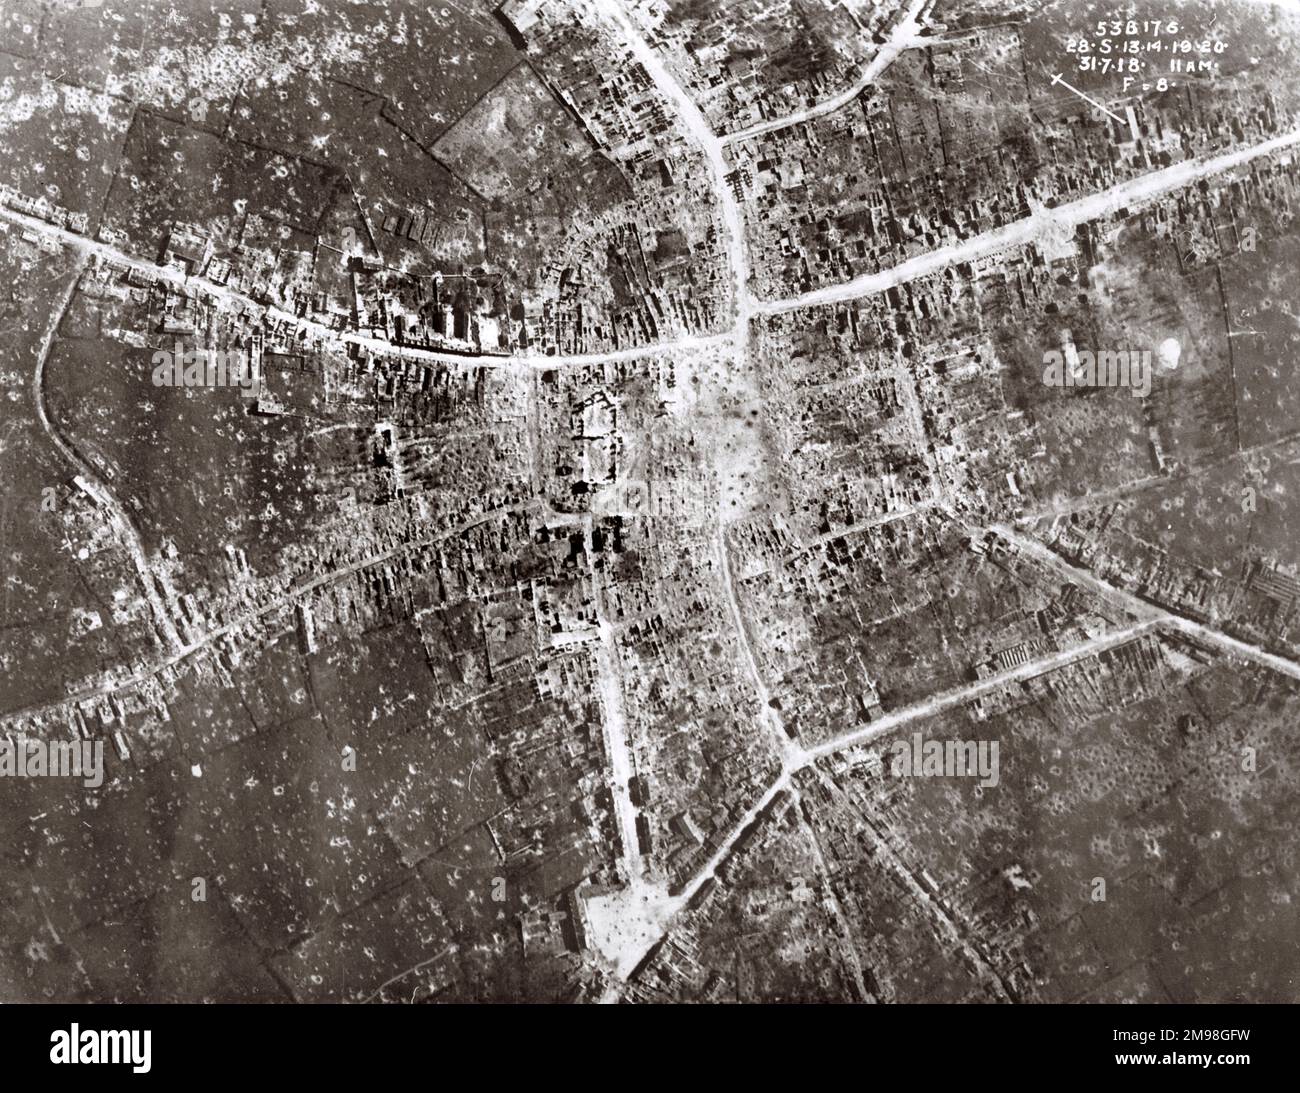 Luftaufnahme von Bailleul, Nord, Nordfrankreich, am 31. Juli 1918, nach dem deutschen Vormarsch im April, mit erheblichen Schäden. Stockfoto